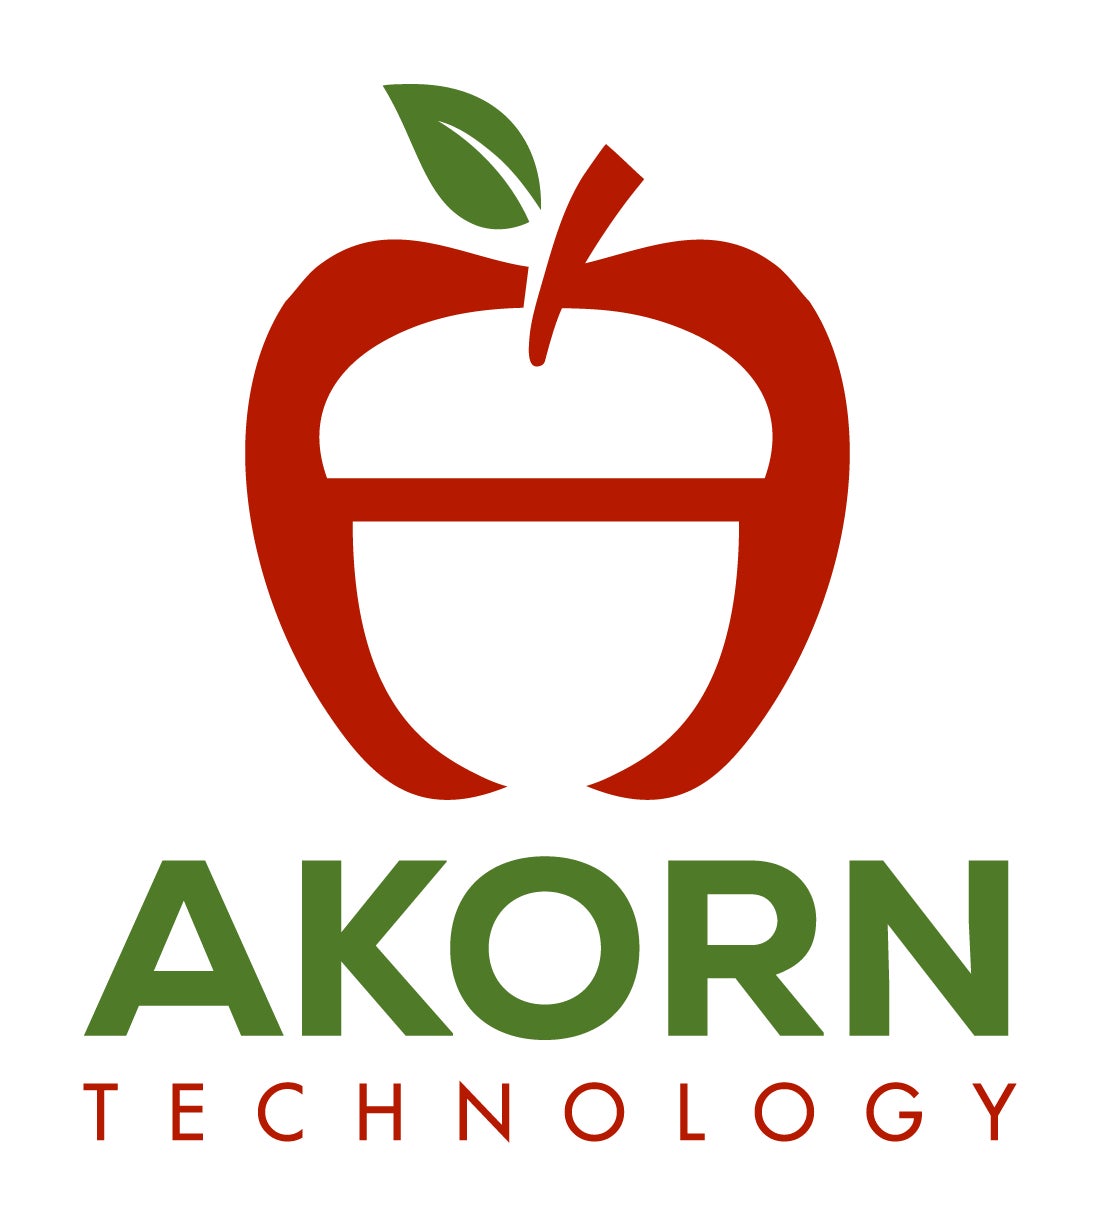 フードイノベーション領域に特化したFuture Food Fund、食品保存期間延長技術のAKORN Technology社に投資